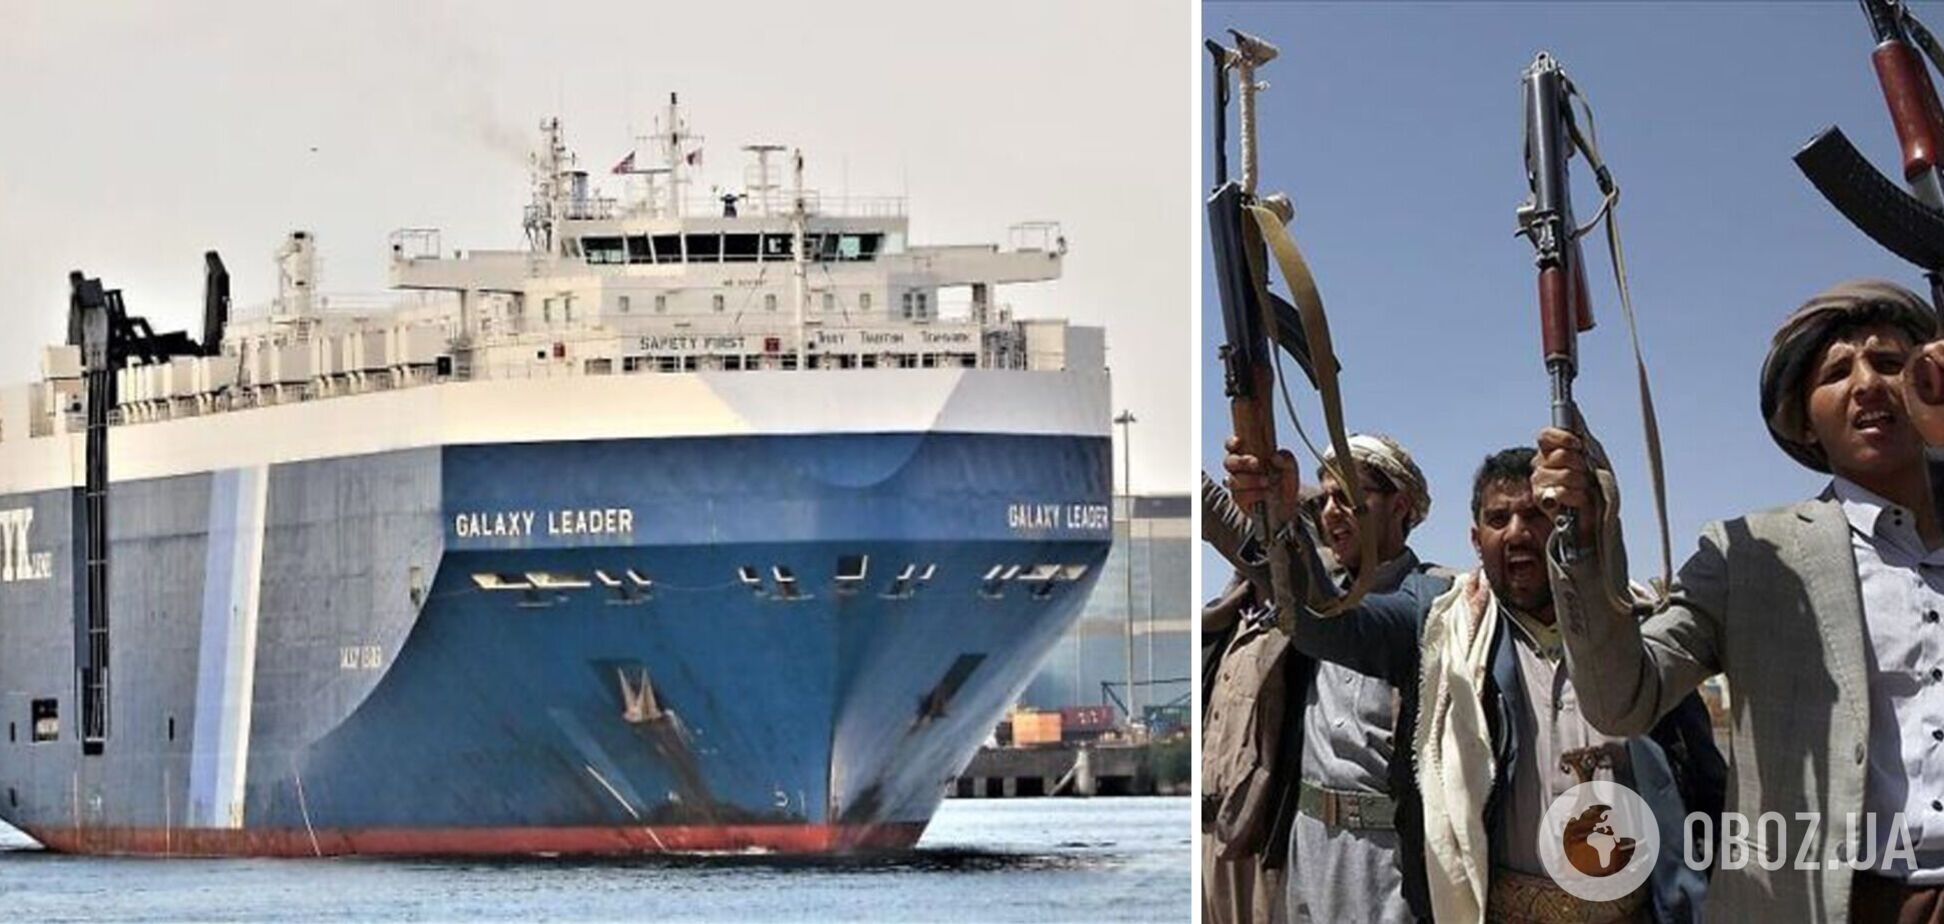 Хусити захопили корабель у Червоному морі: ЦАХАЛ спростував належність судна Ізраїлю, на борту є українці